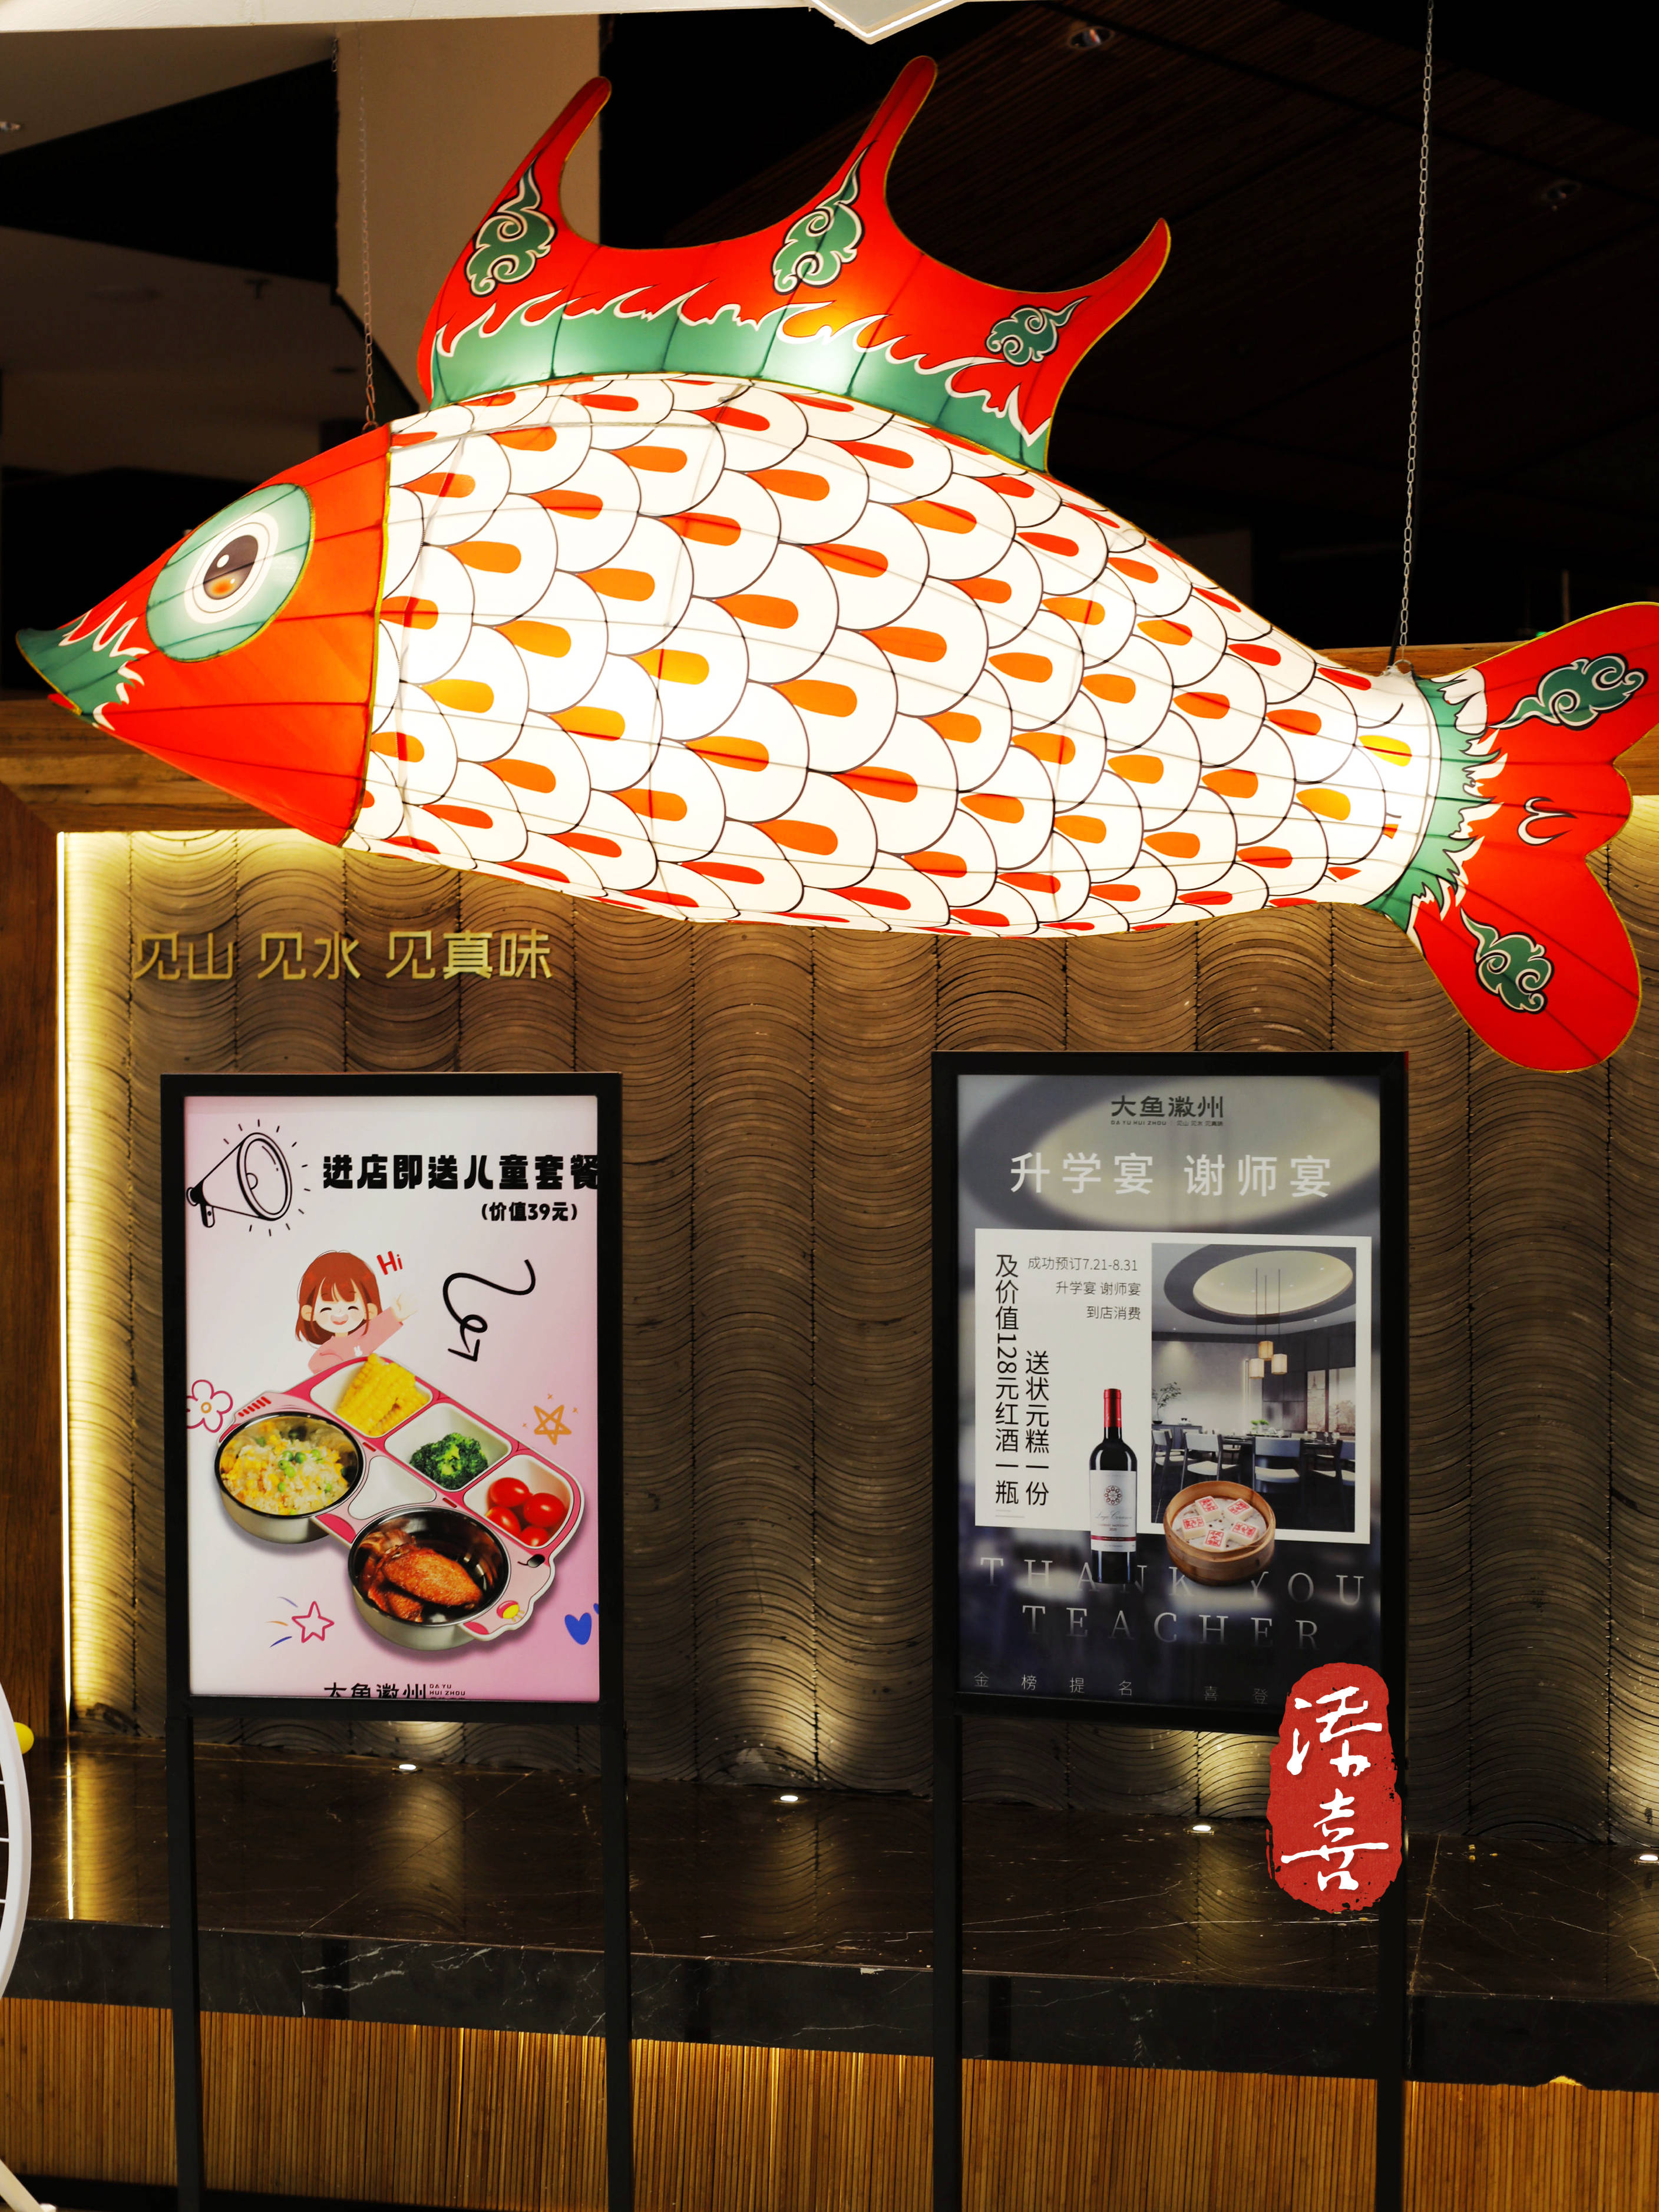 来自鱼米之乡的富庶滋味——大鱼徽州升级版家宴餐厅首驻杭州金沙印象城